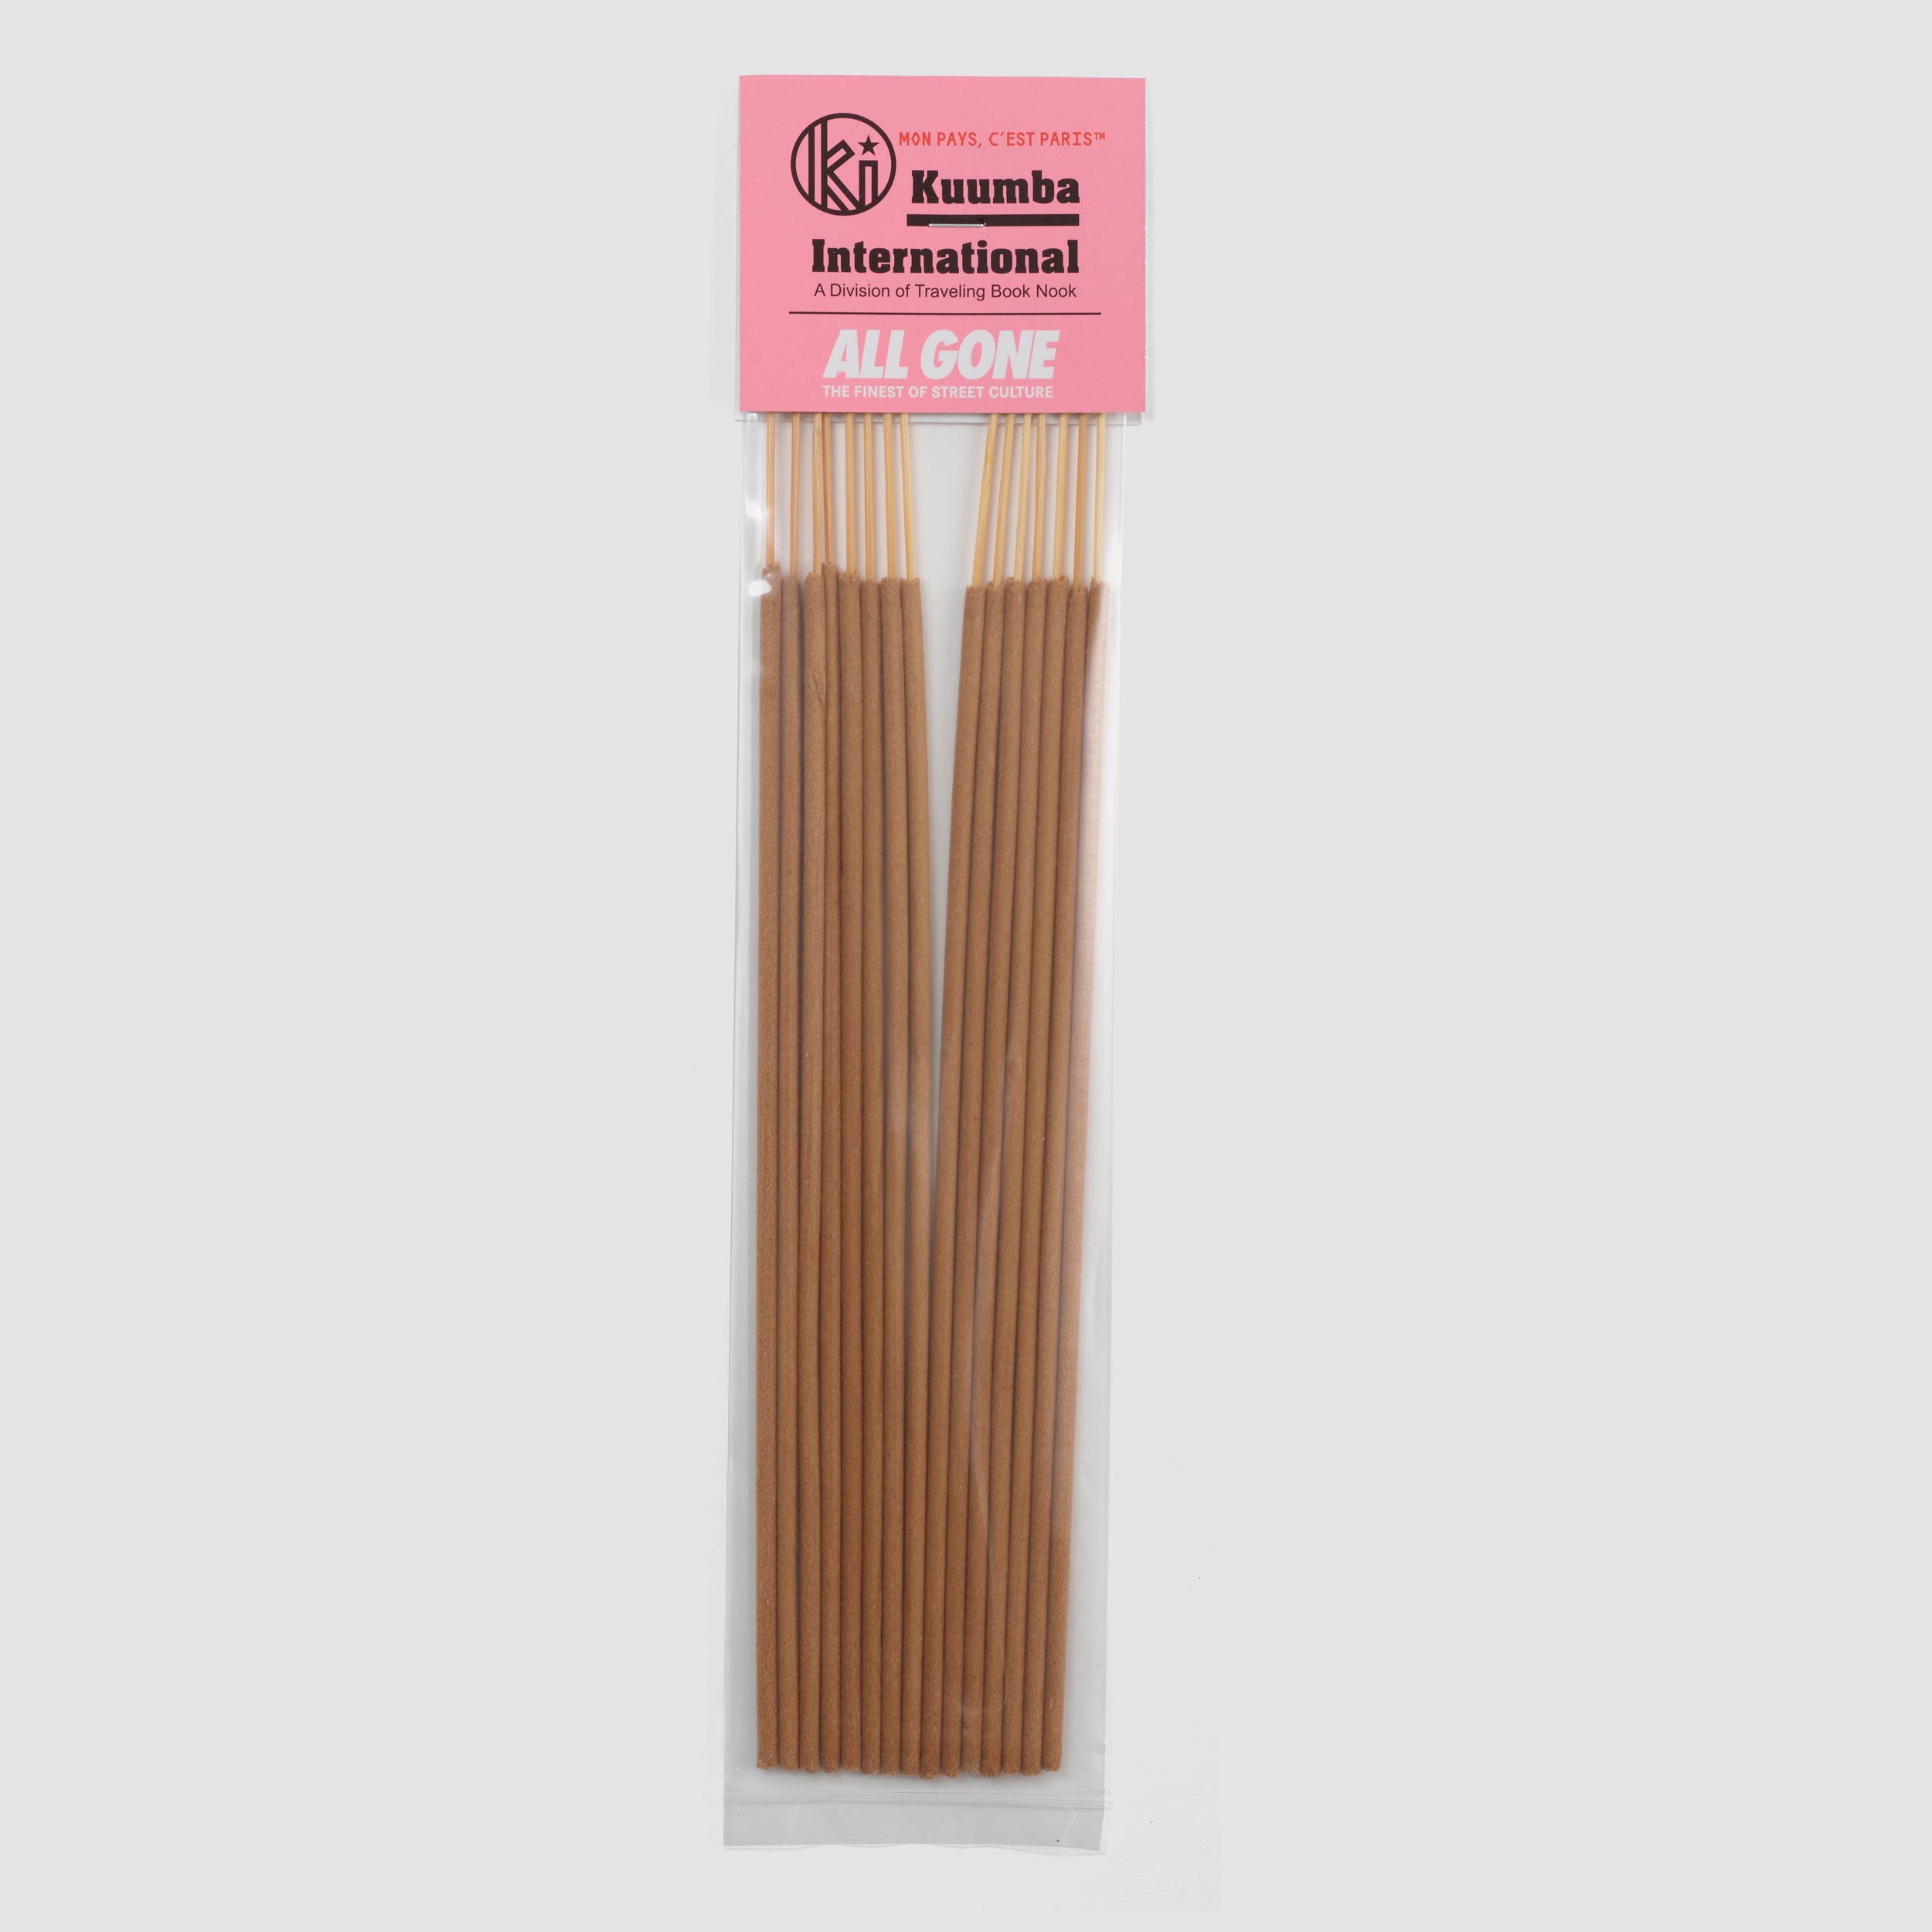 All Gone for Kuumba “Mon pays c’est Paris” incense sticks